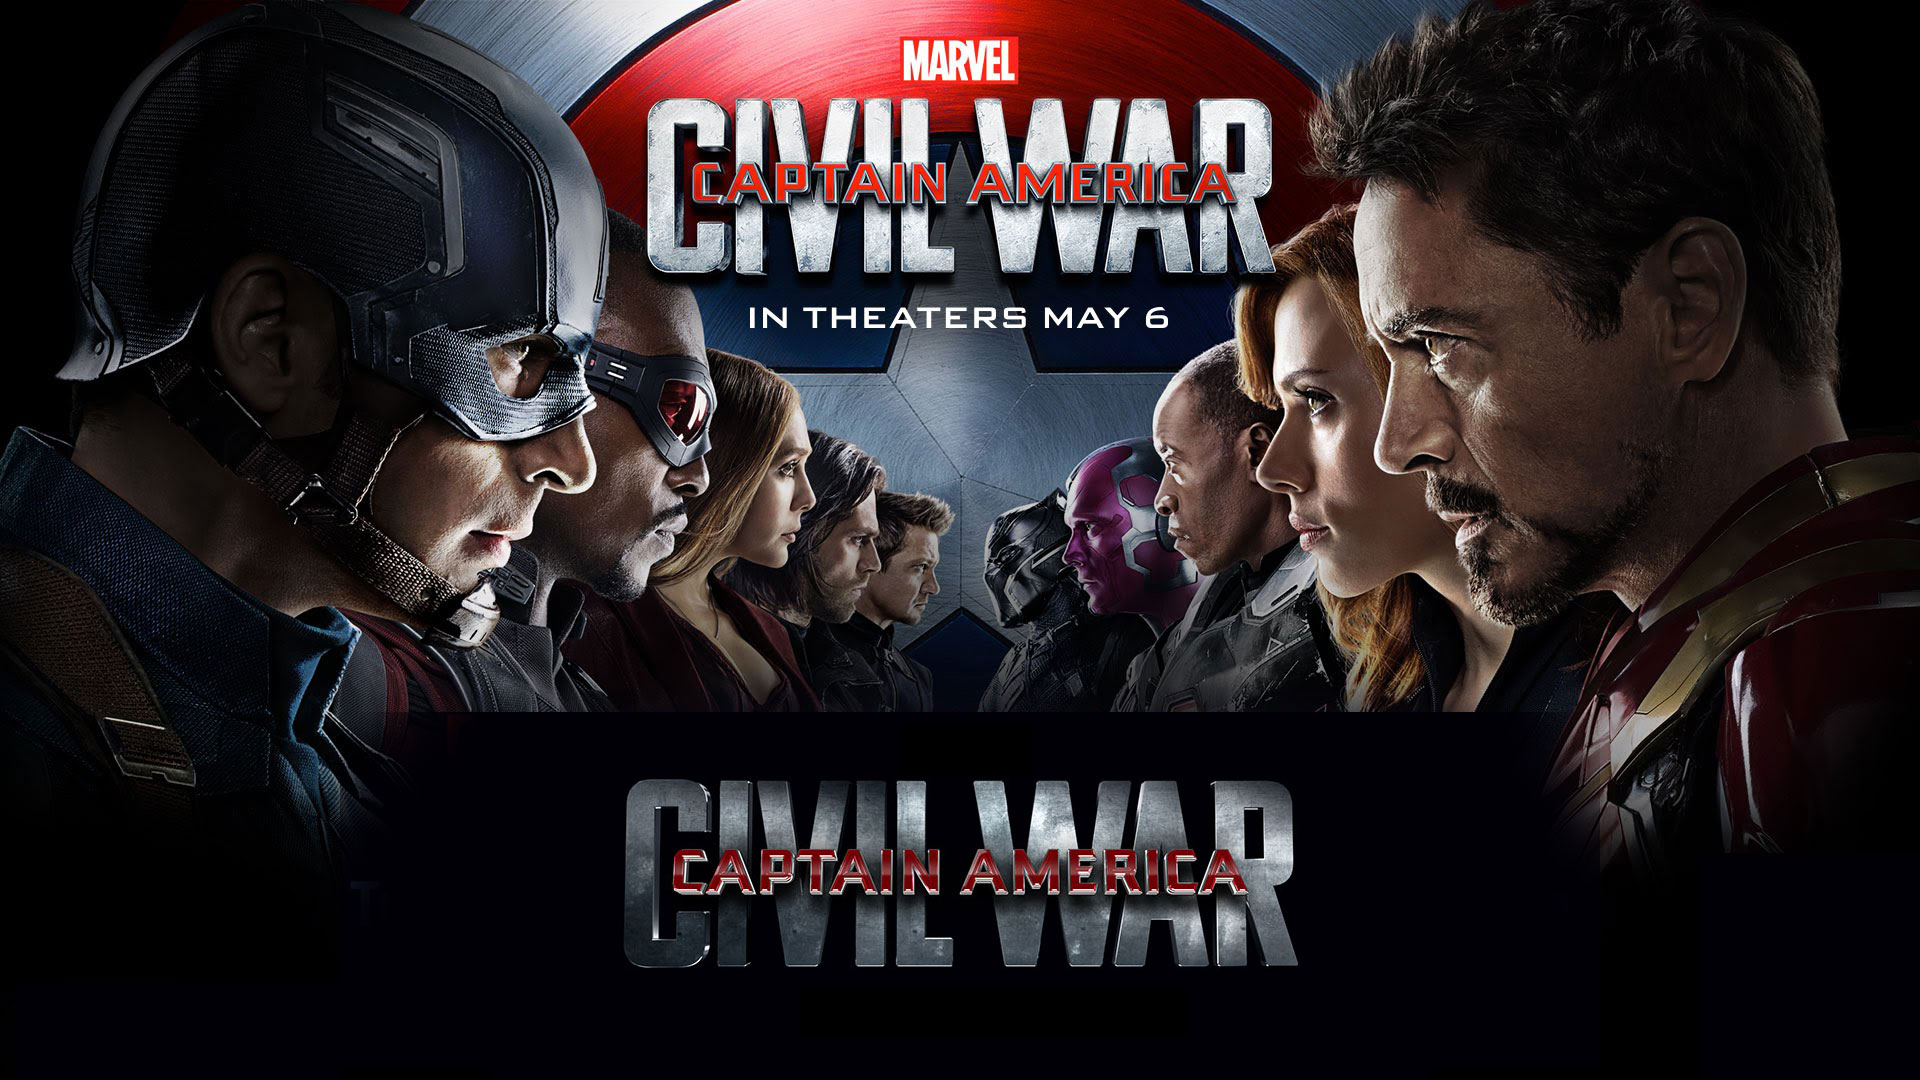 Captain America Civil War iPhone Desktop Wallpaper HD